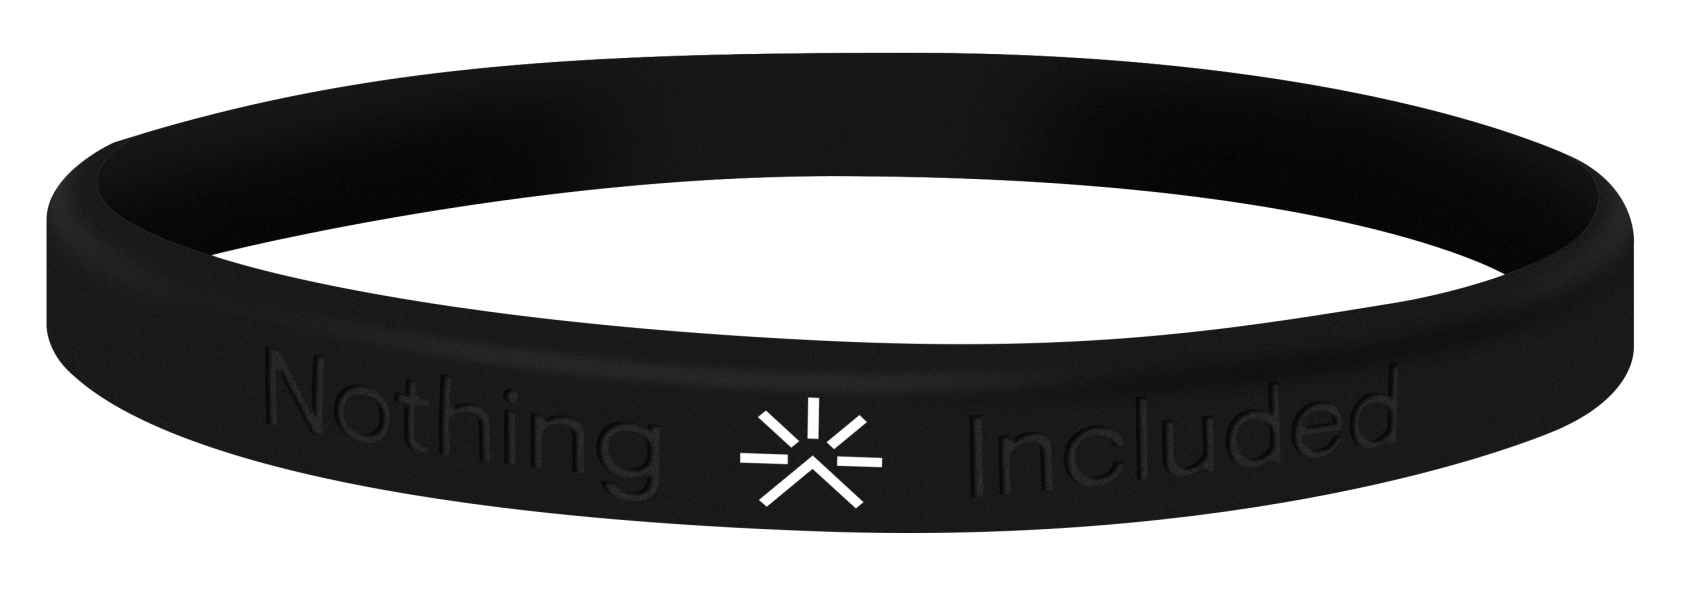 Nothing Included Wristband (Pulsera ‘Nada Incluído’), la pulsera icono de la campaña